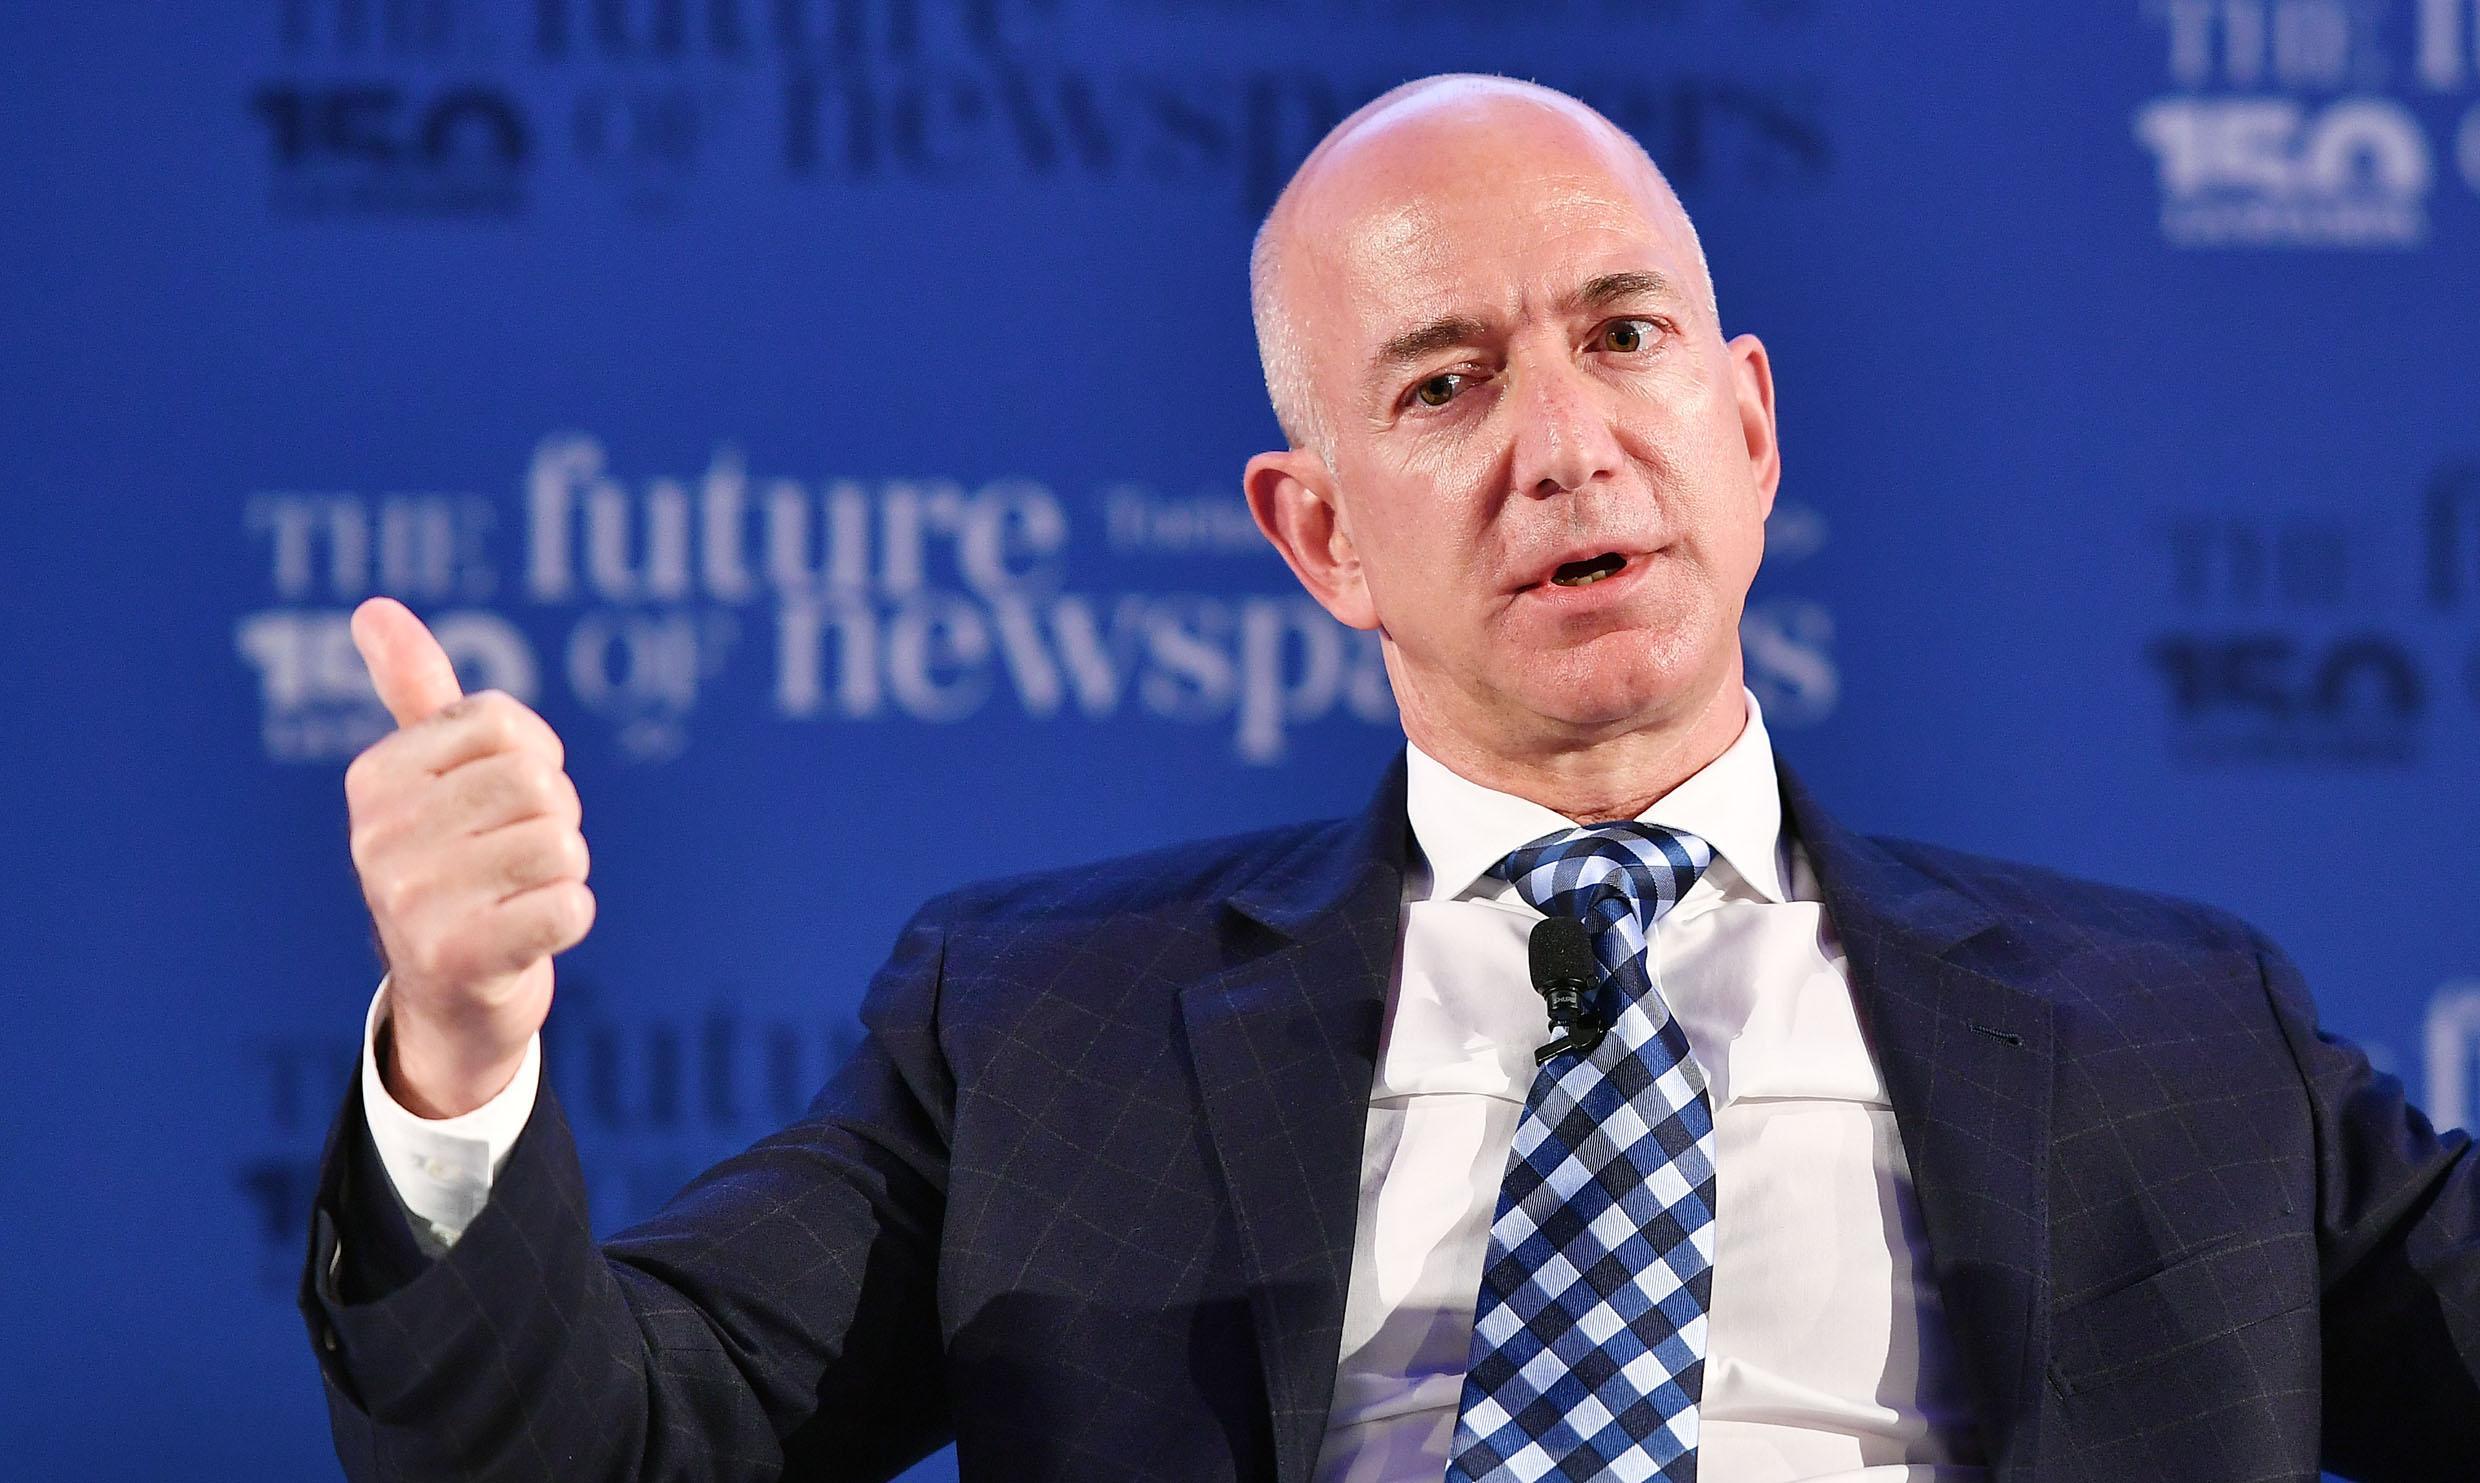 Black Lives Matter : Jeff Bezos, le patron d'Amazon, répond directement aux critiques